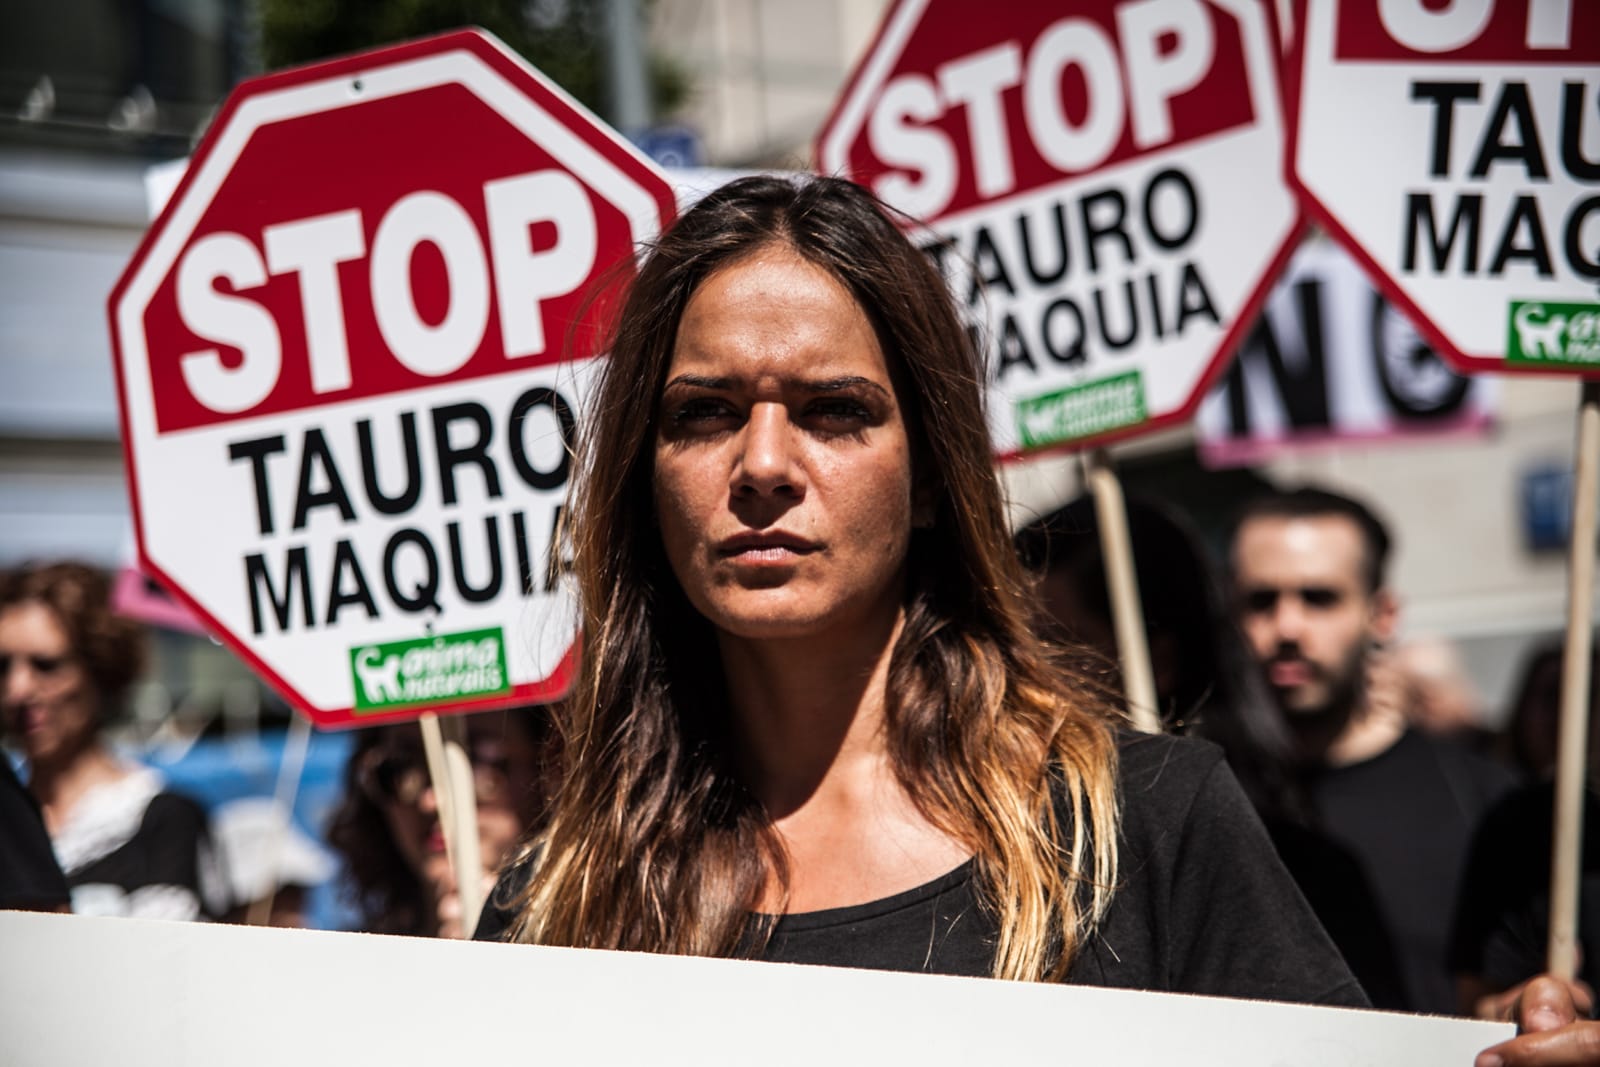 Exigimos el fin de la tauromaquia frente al Ayuntamiento de Madrid